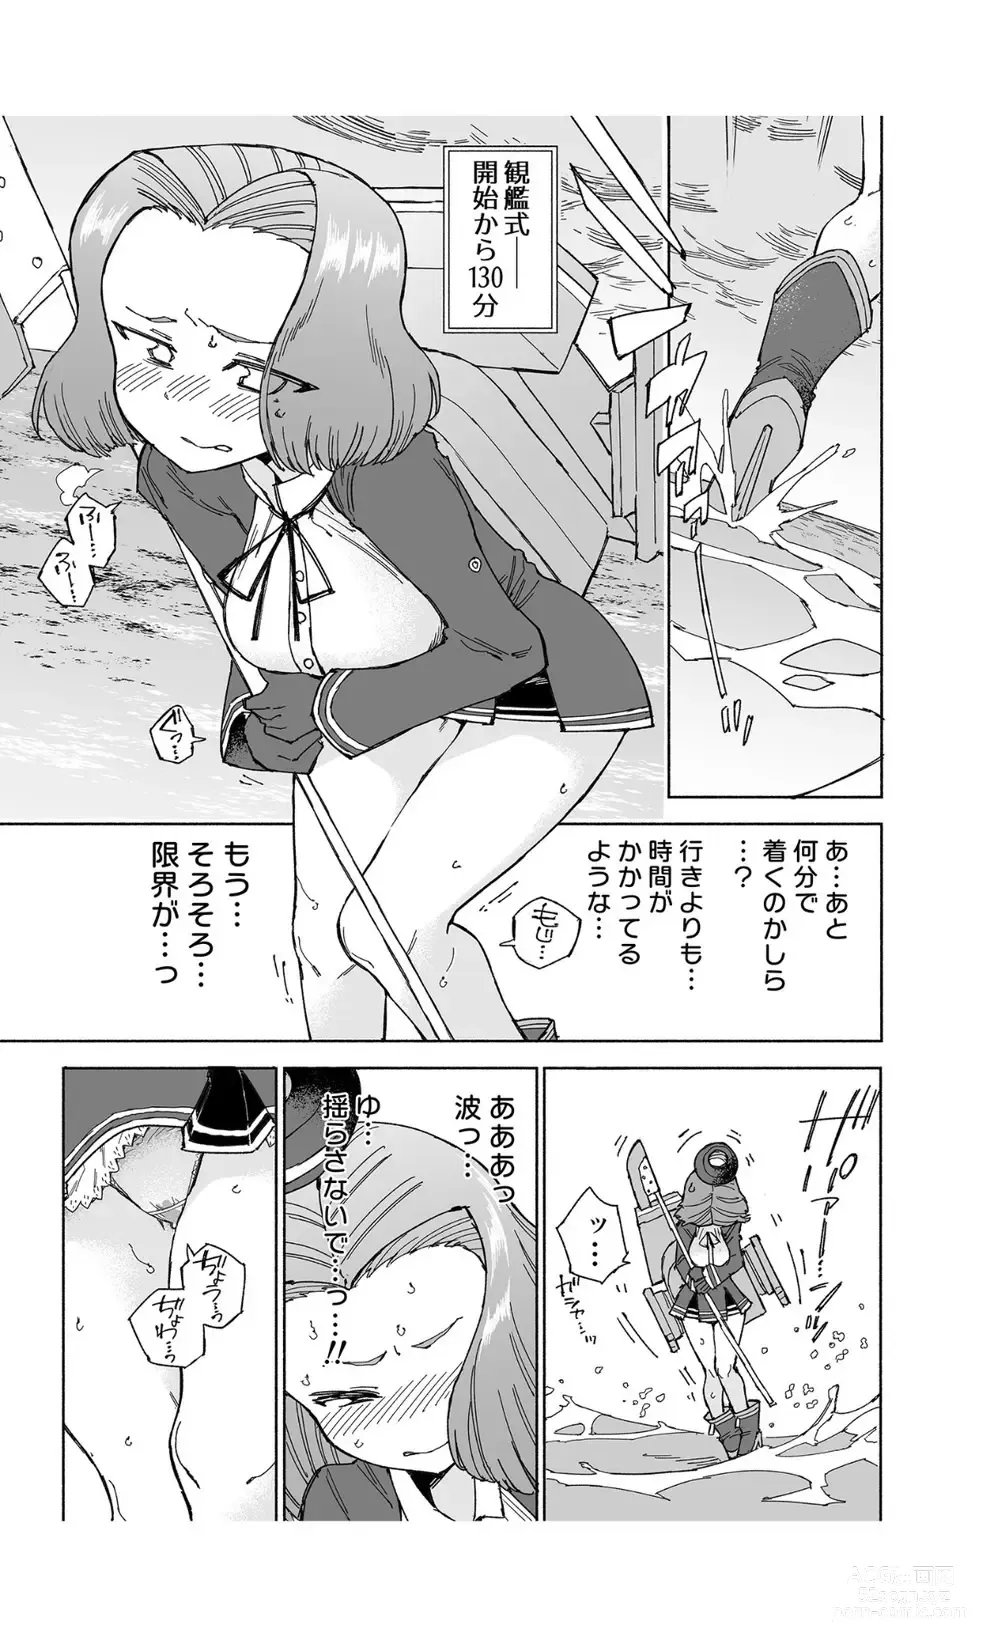 Page 21 of doujinshi Tatsuta Dam wa Himeyaka ni